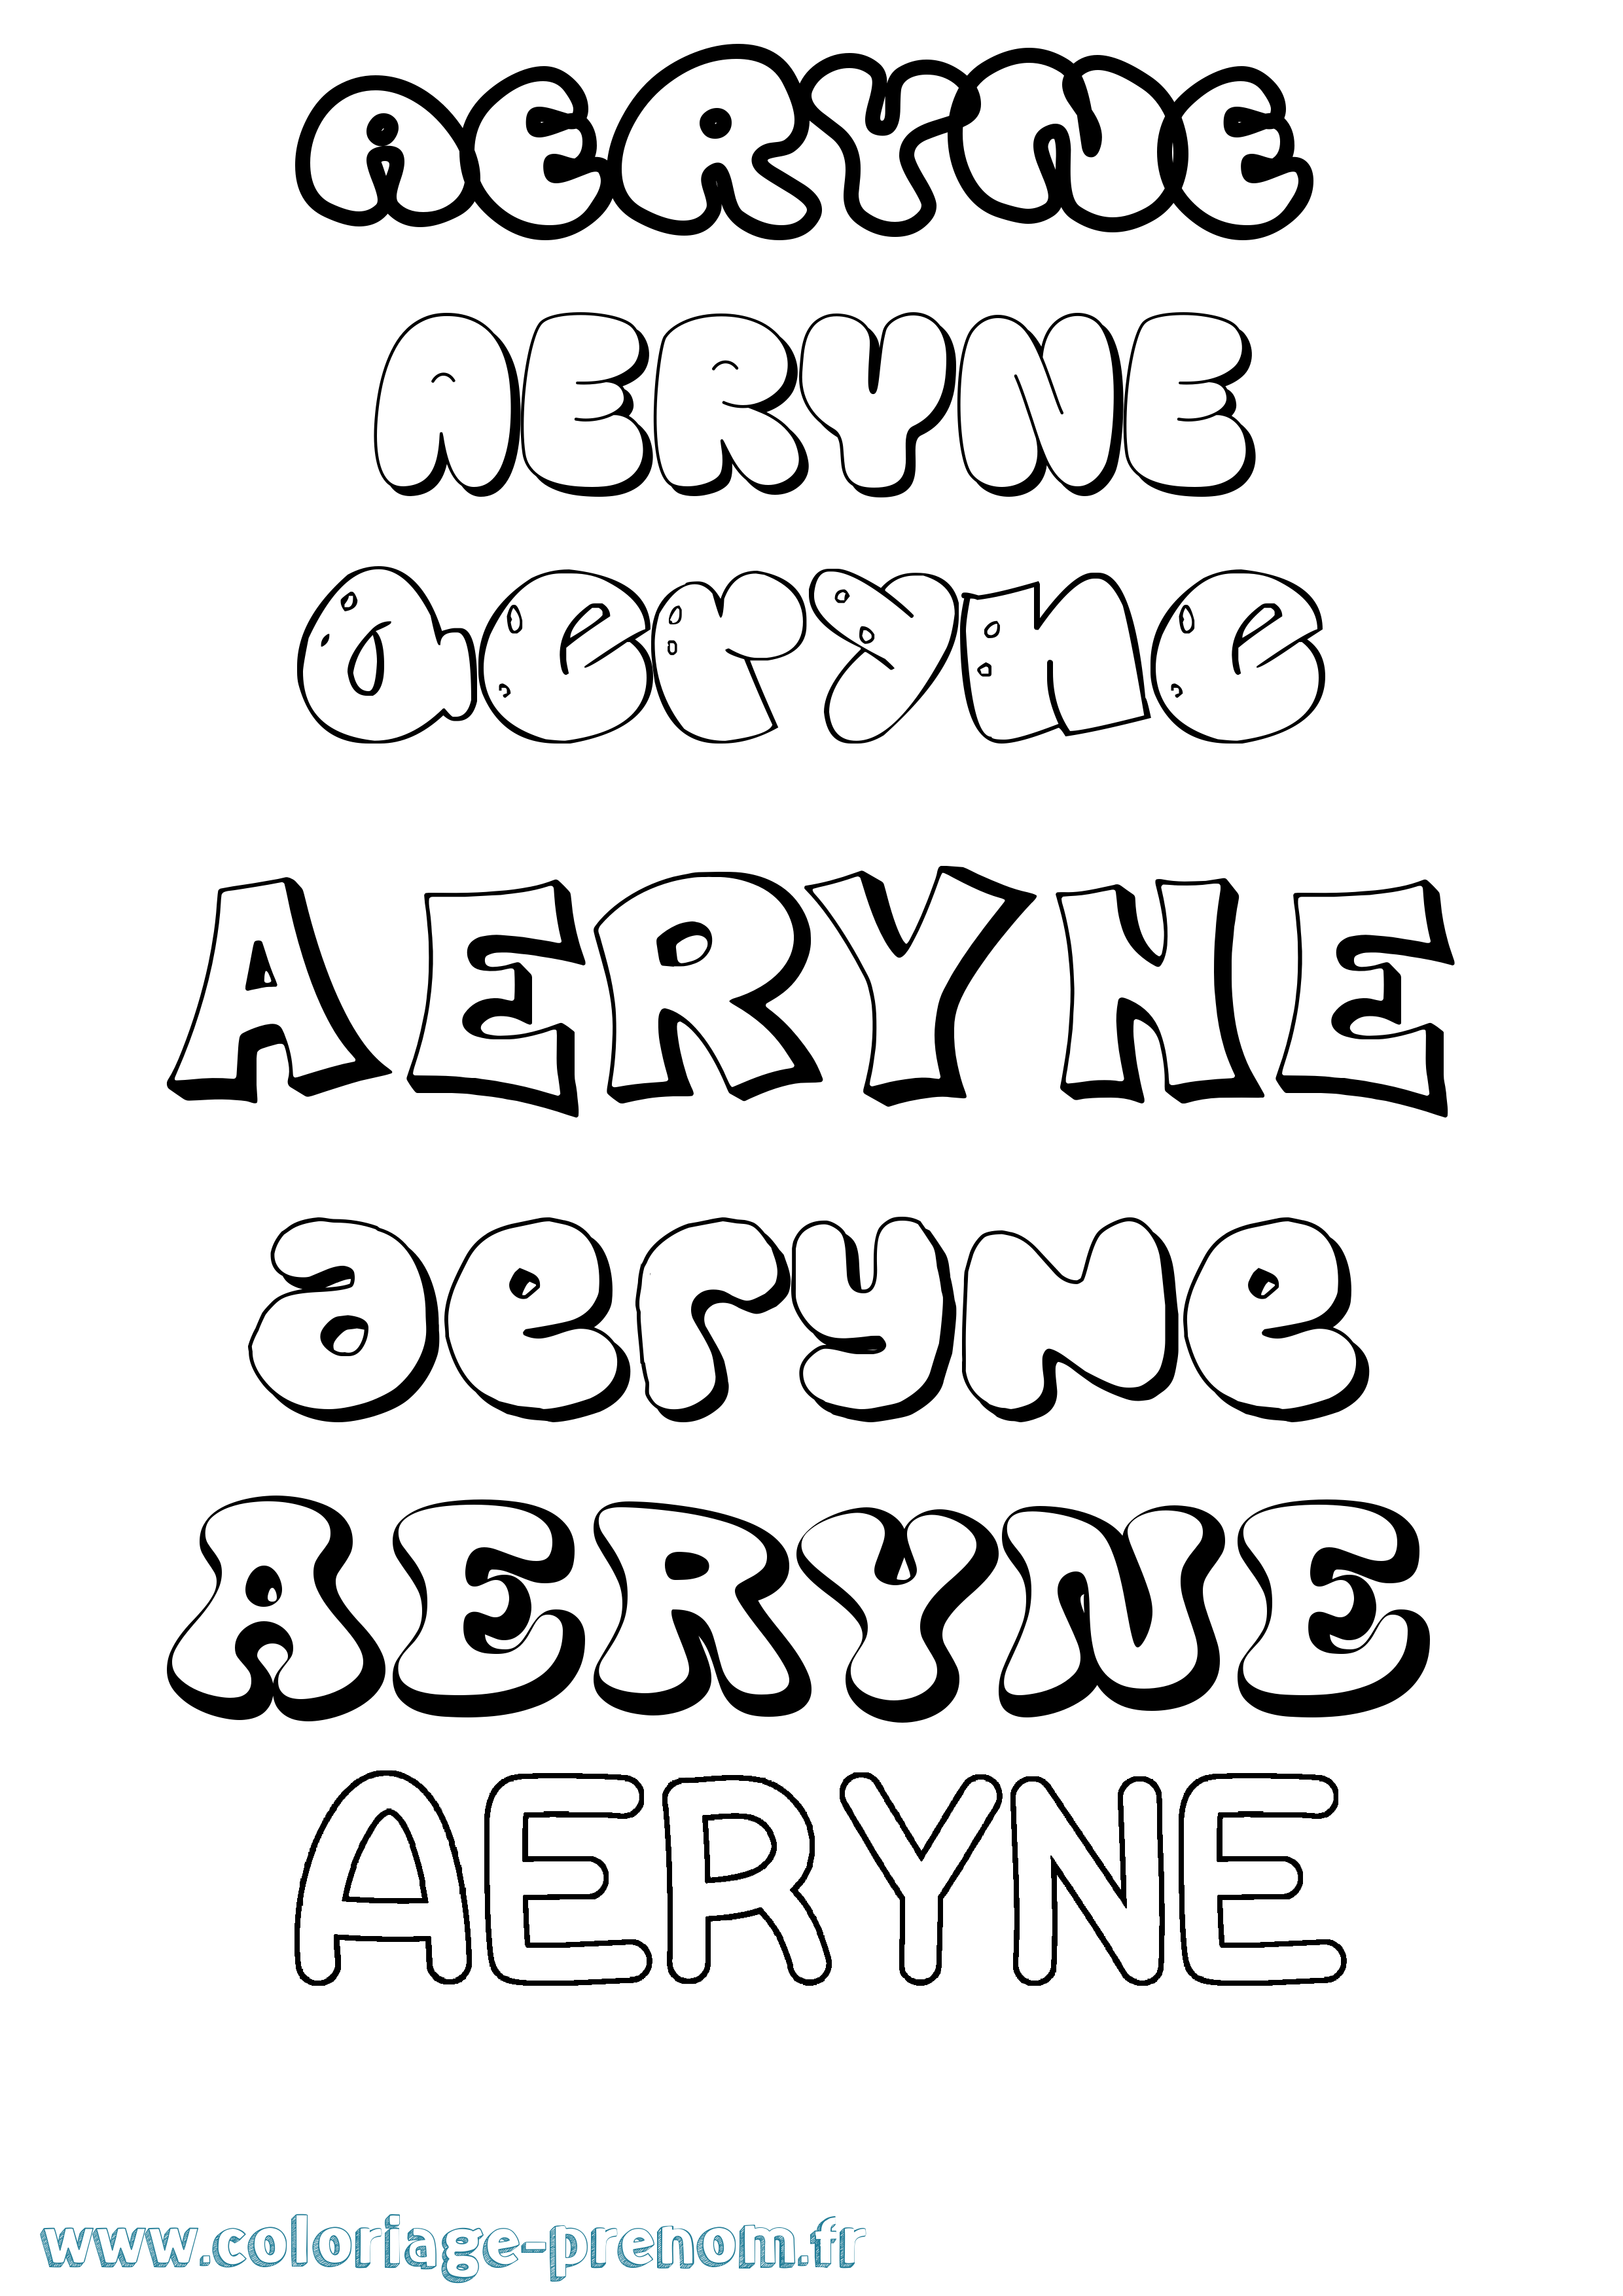 Coloriage prénom Aeryne Bubble